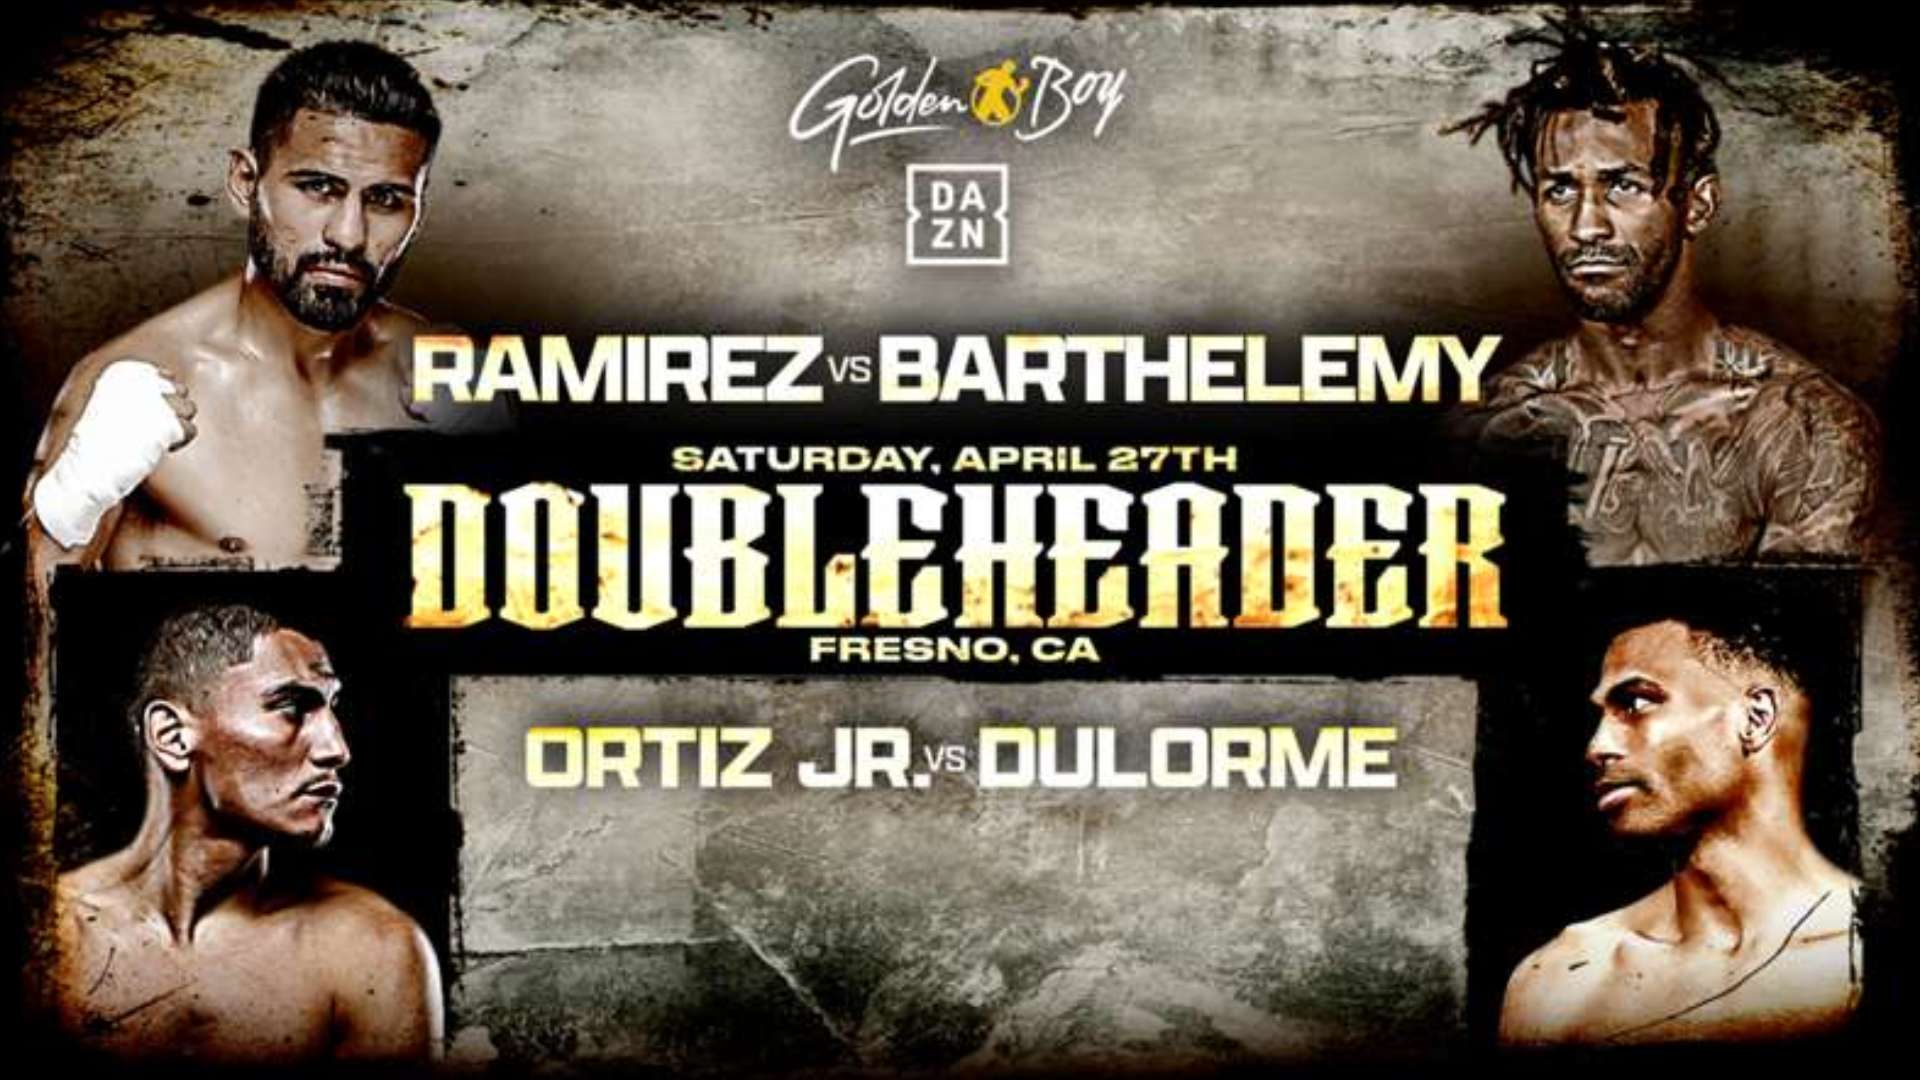 Jose Ramirez vs Rances Barthelemy